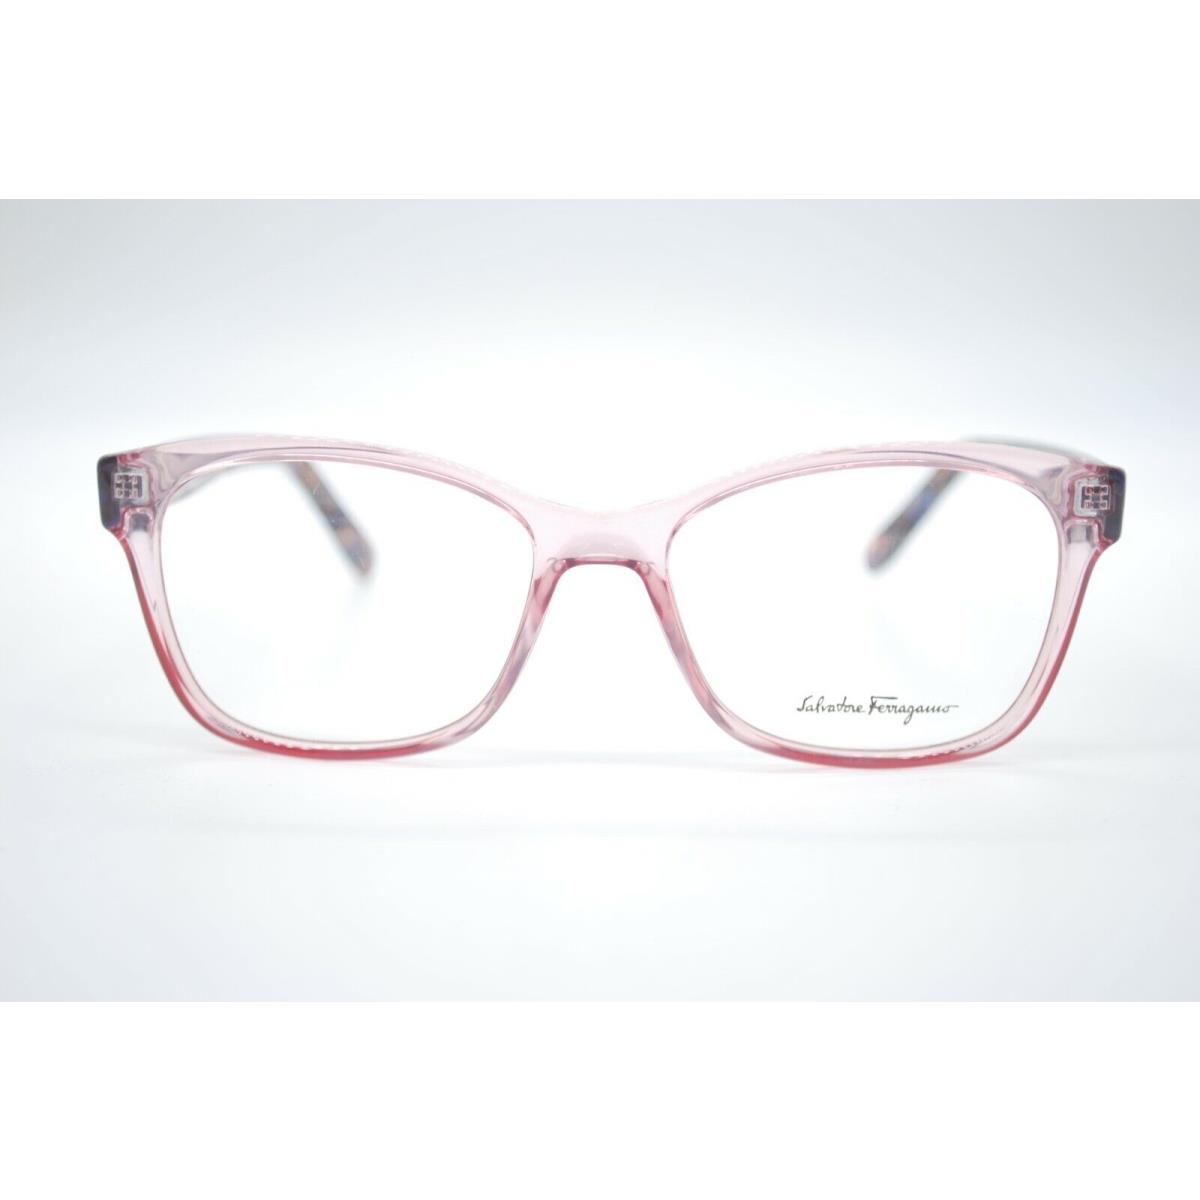 Salvatore Ferragamo eyeglasses  - ANTIQUE ROSE Frame 0